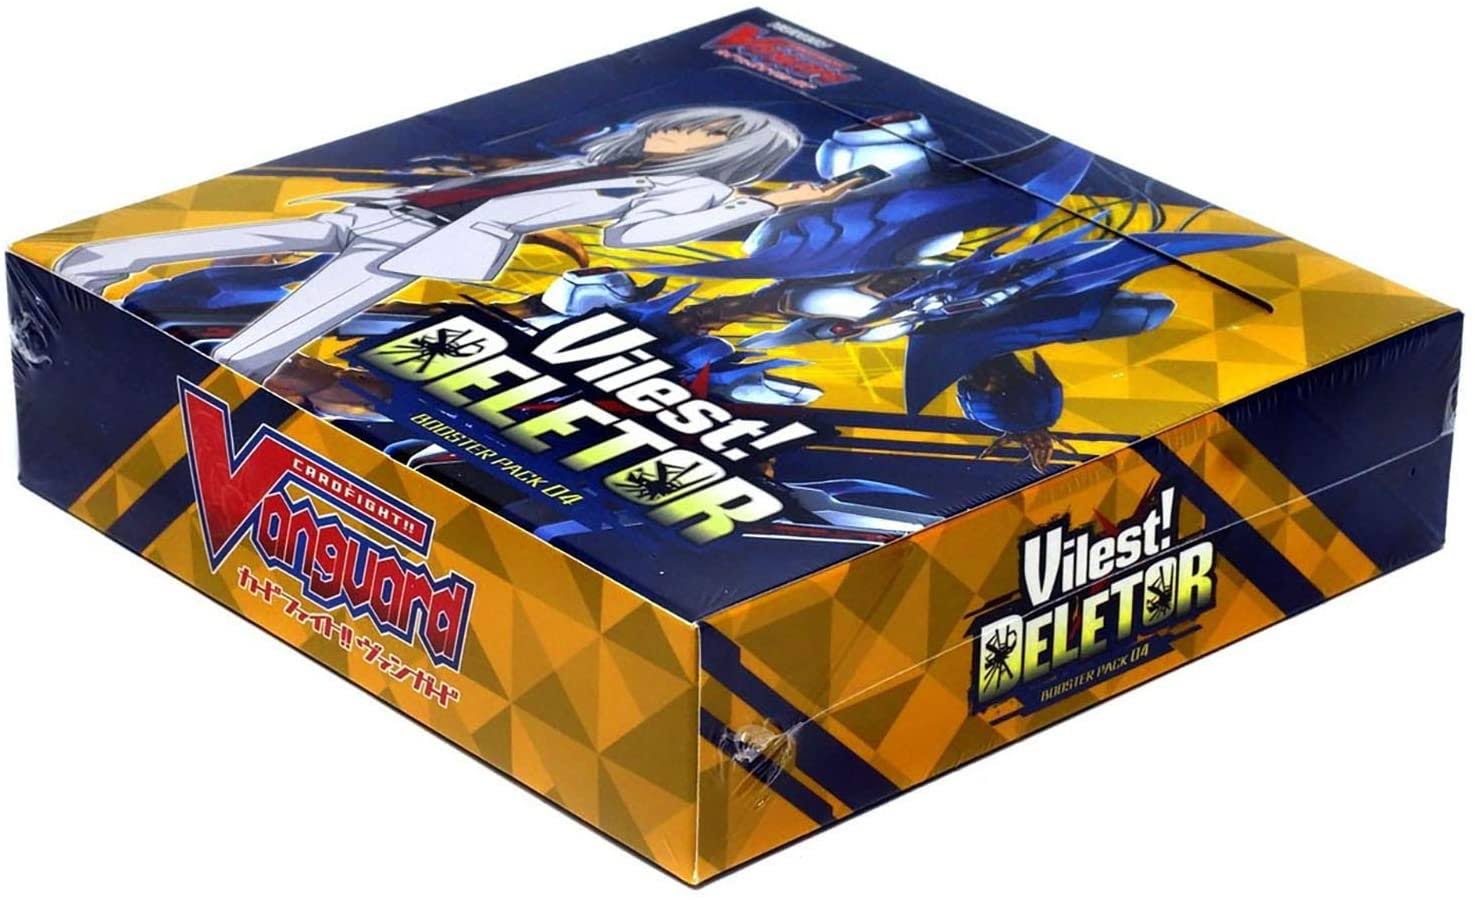 CardFight Vanguard TCG: Vilest! Deletor Booster Box (16 Packs)